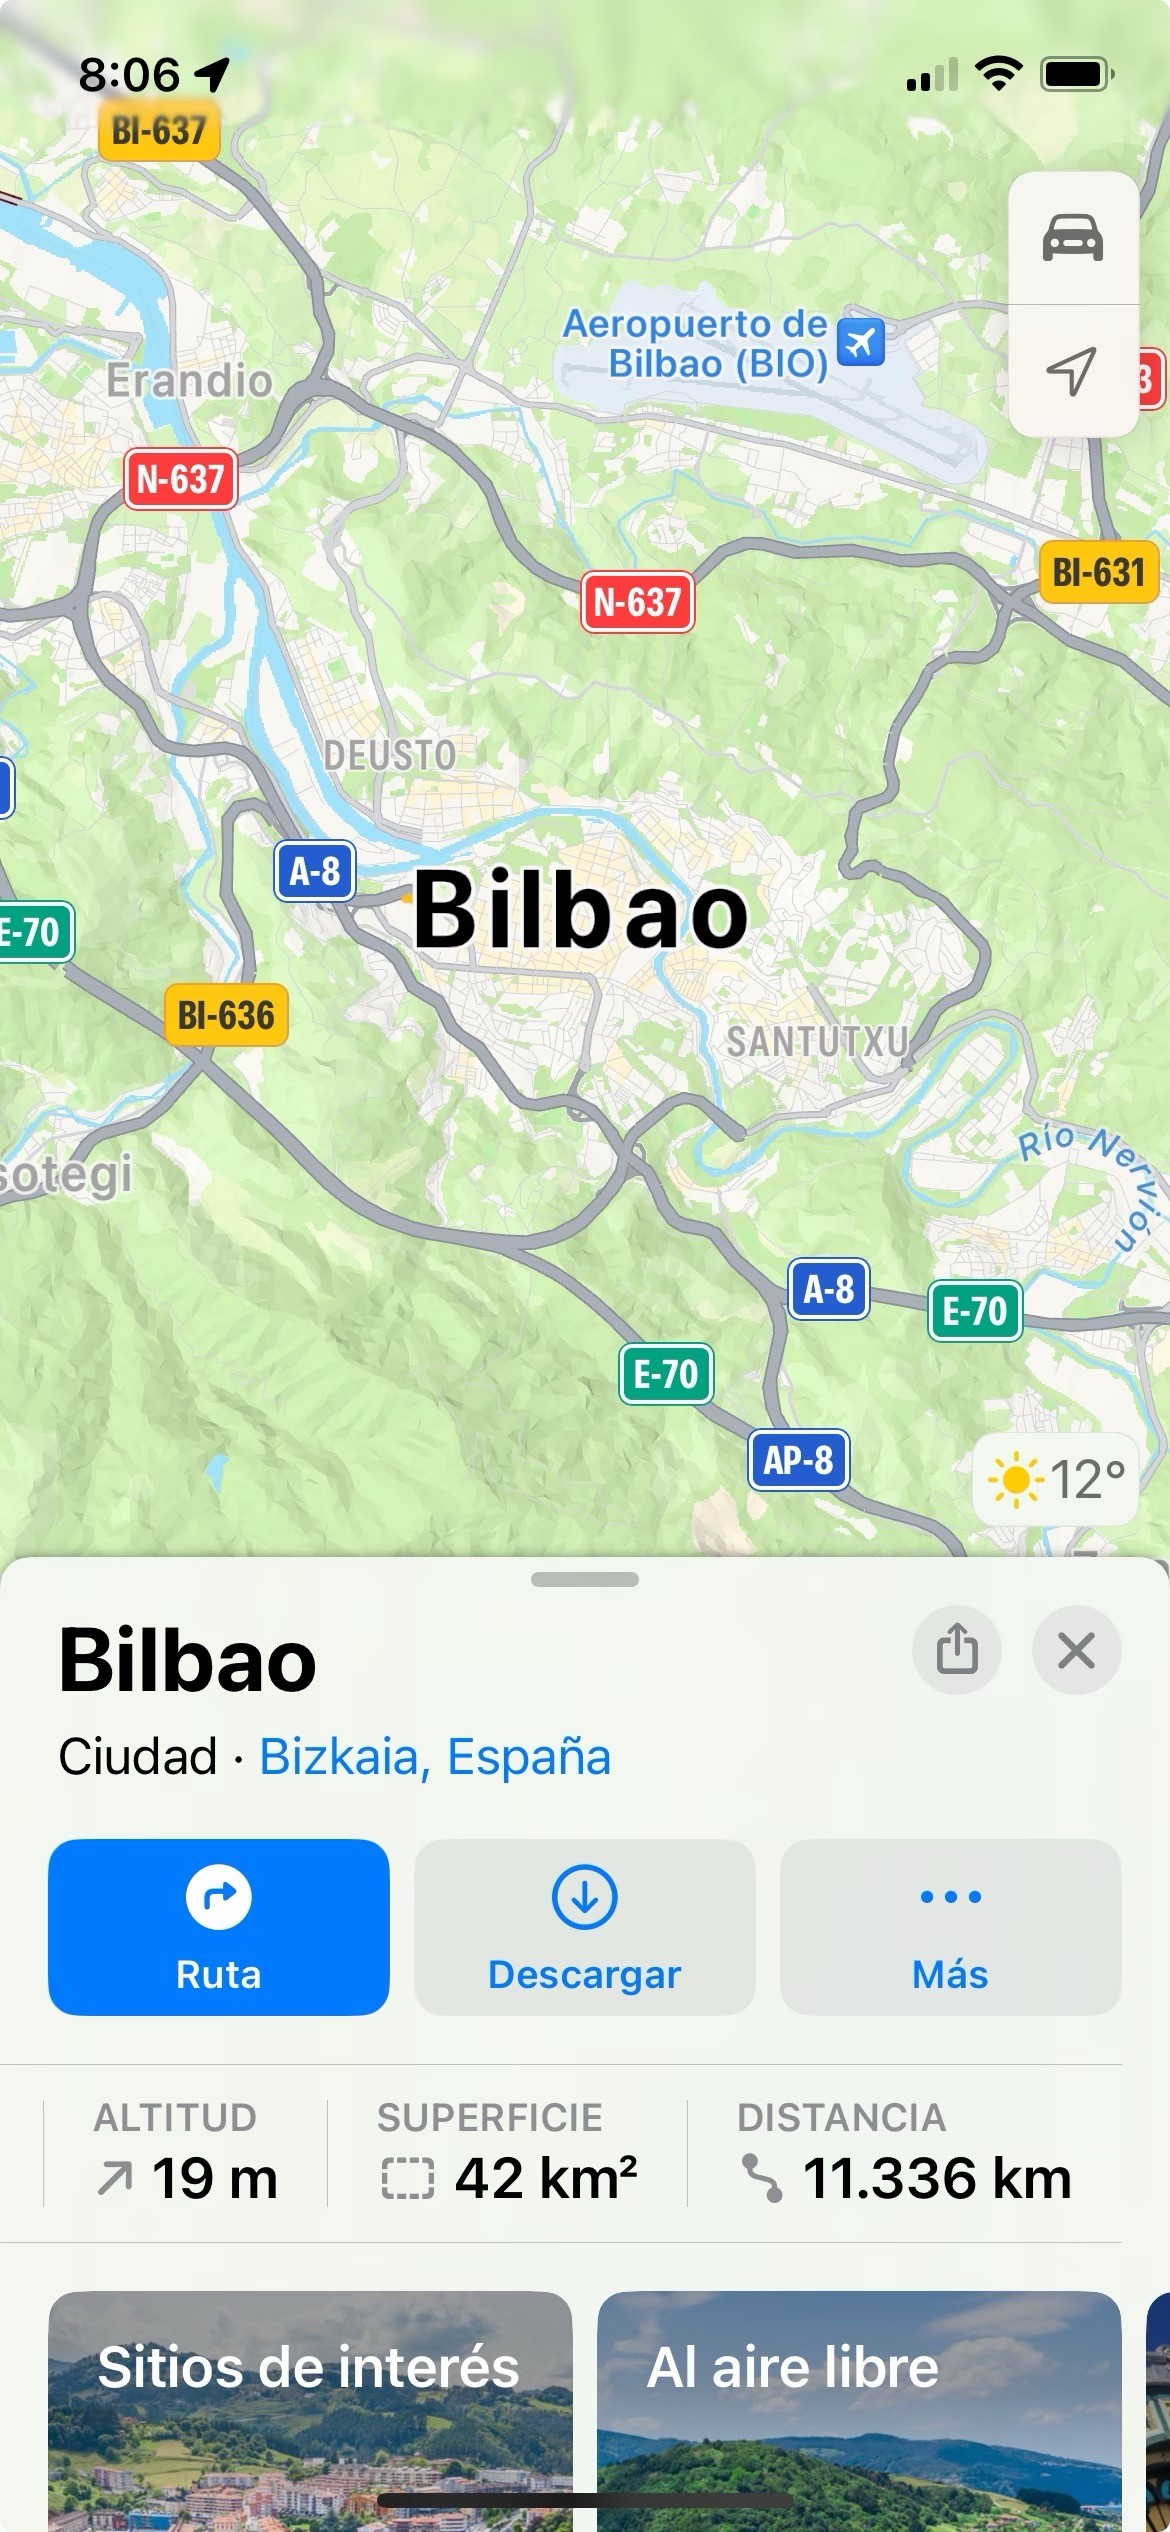 Pantallazo de Apple Maps mostrando Bilbao. Bajo el mapa hay varias medidas geográficas, incluyendo una altitud de 19m sobre el nivel del mar, un área de unos 42 km2, y una distancia desde la localización actual de 11336 km.